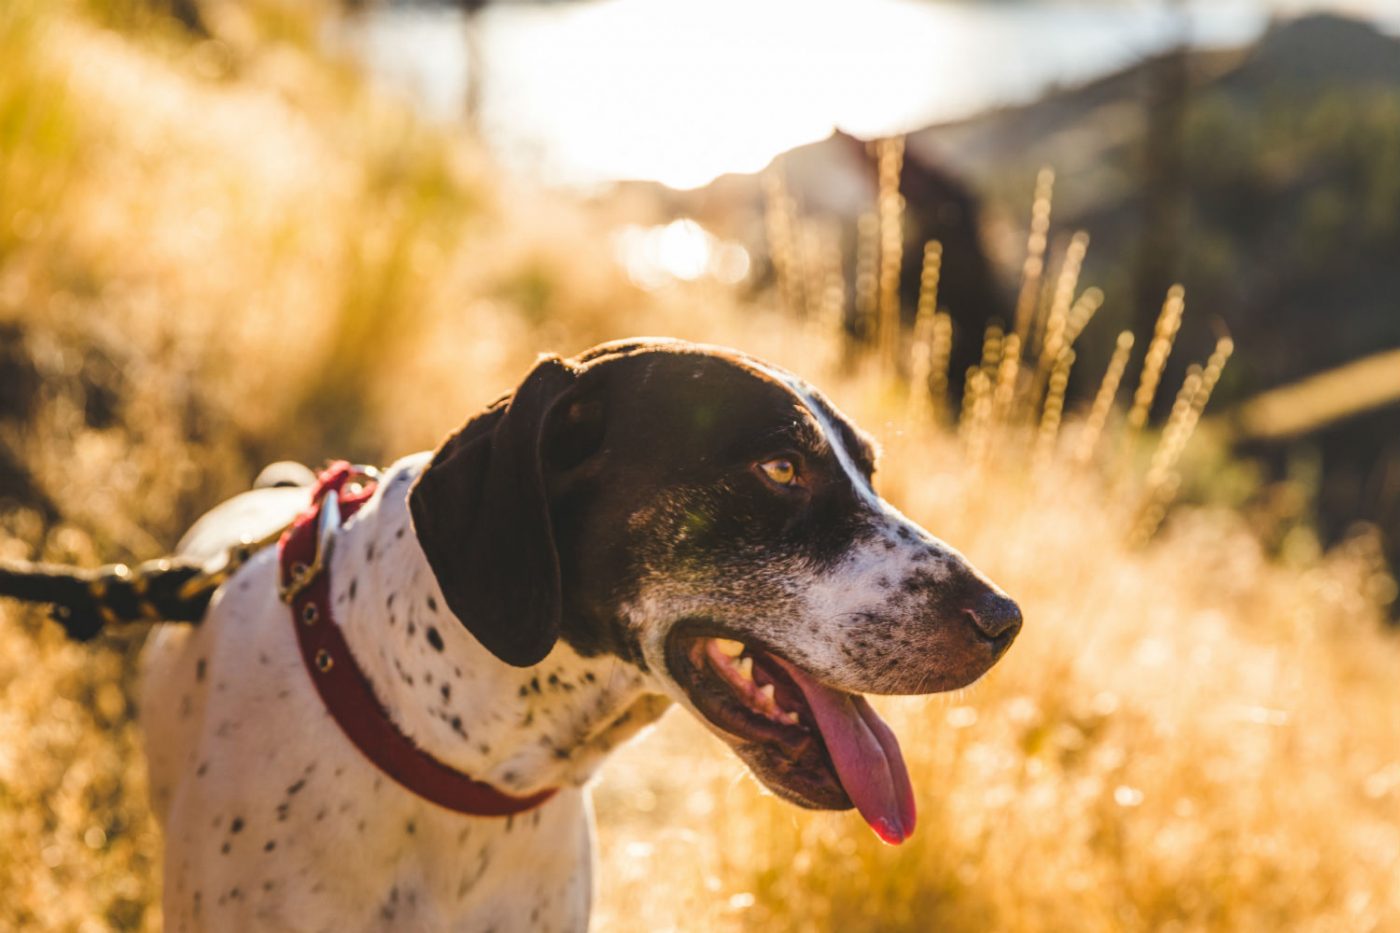 Beneficios del sol para tu perro